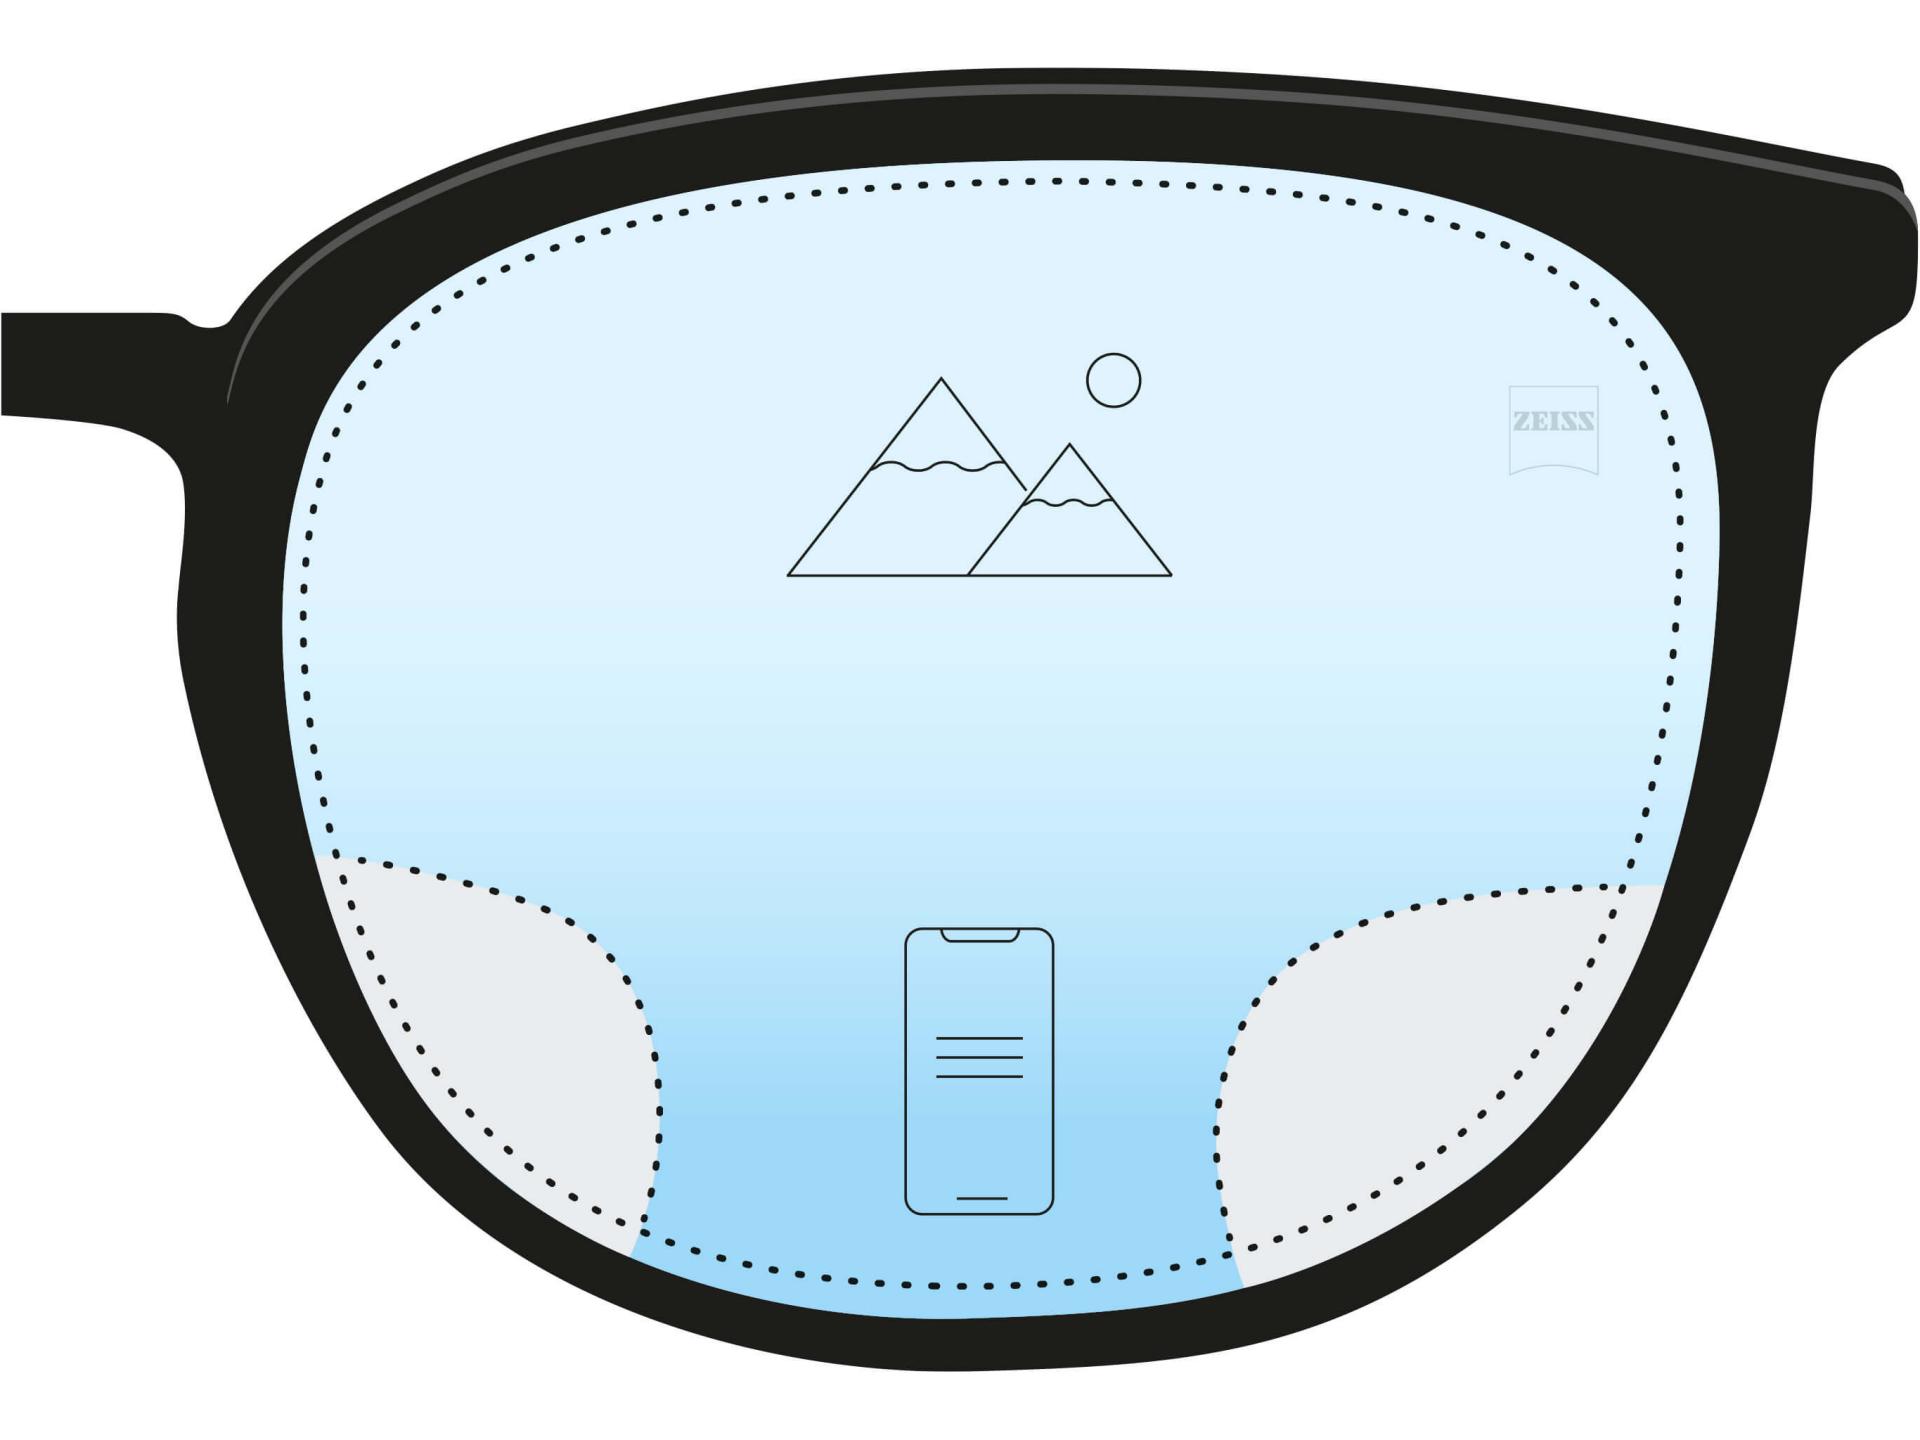 En illustration af et anti-trættende brilleglas. To ikoner og en farveovergang fra mørkeblåt i bunden til lyseblåt foroven viser at det største område i brilleglasset har en afstandsstyrke, men at der er et lille område forneden, der bidrager til at se tæt på.